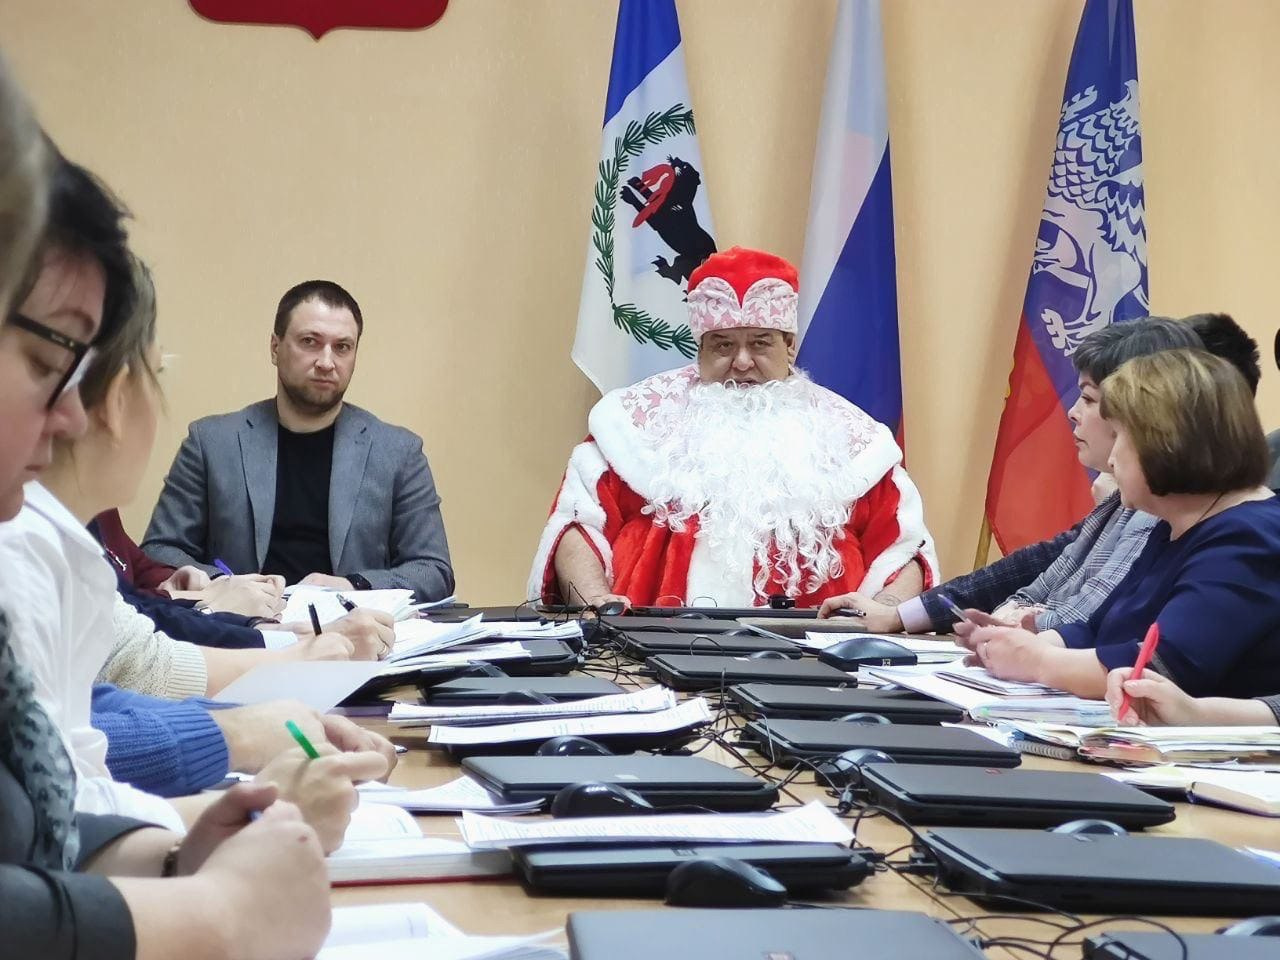 Последнее совещание в мэрии в 2022 году Боровский провел в образе Деда Мороза